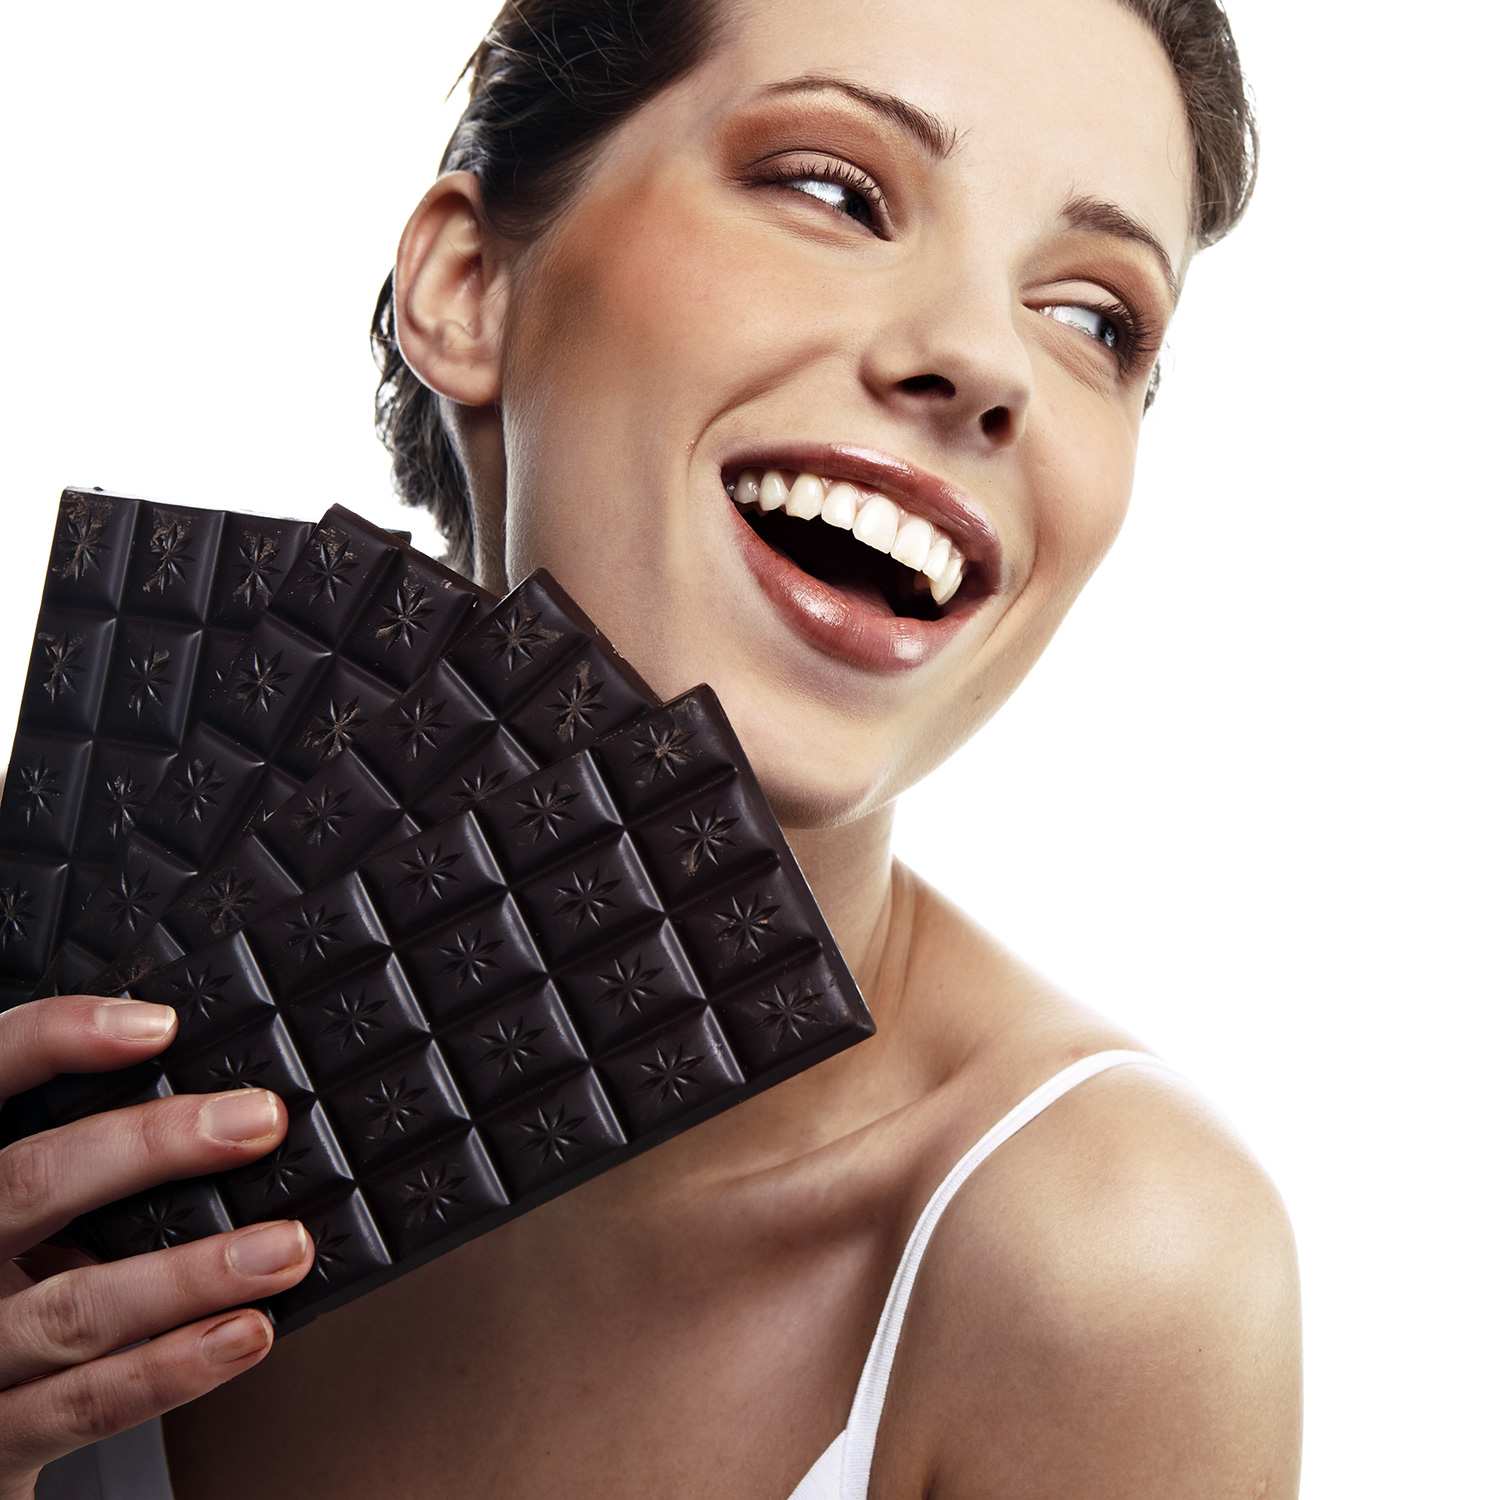 Шоколад и здоровье